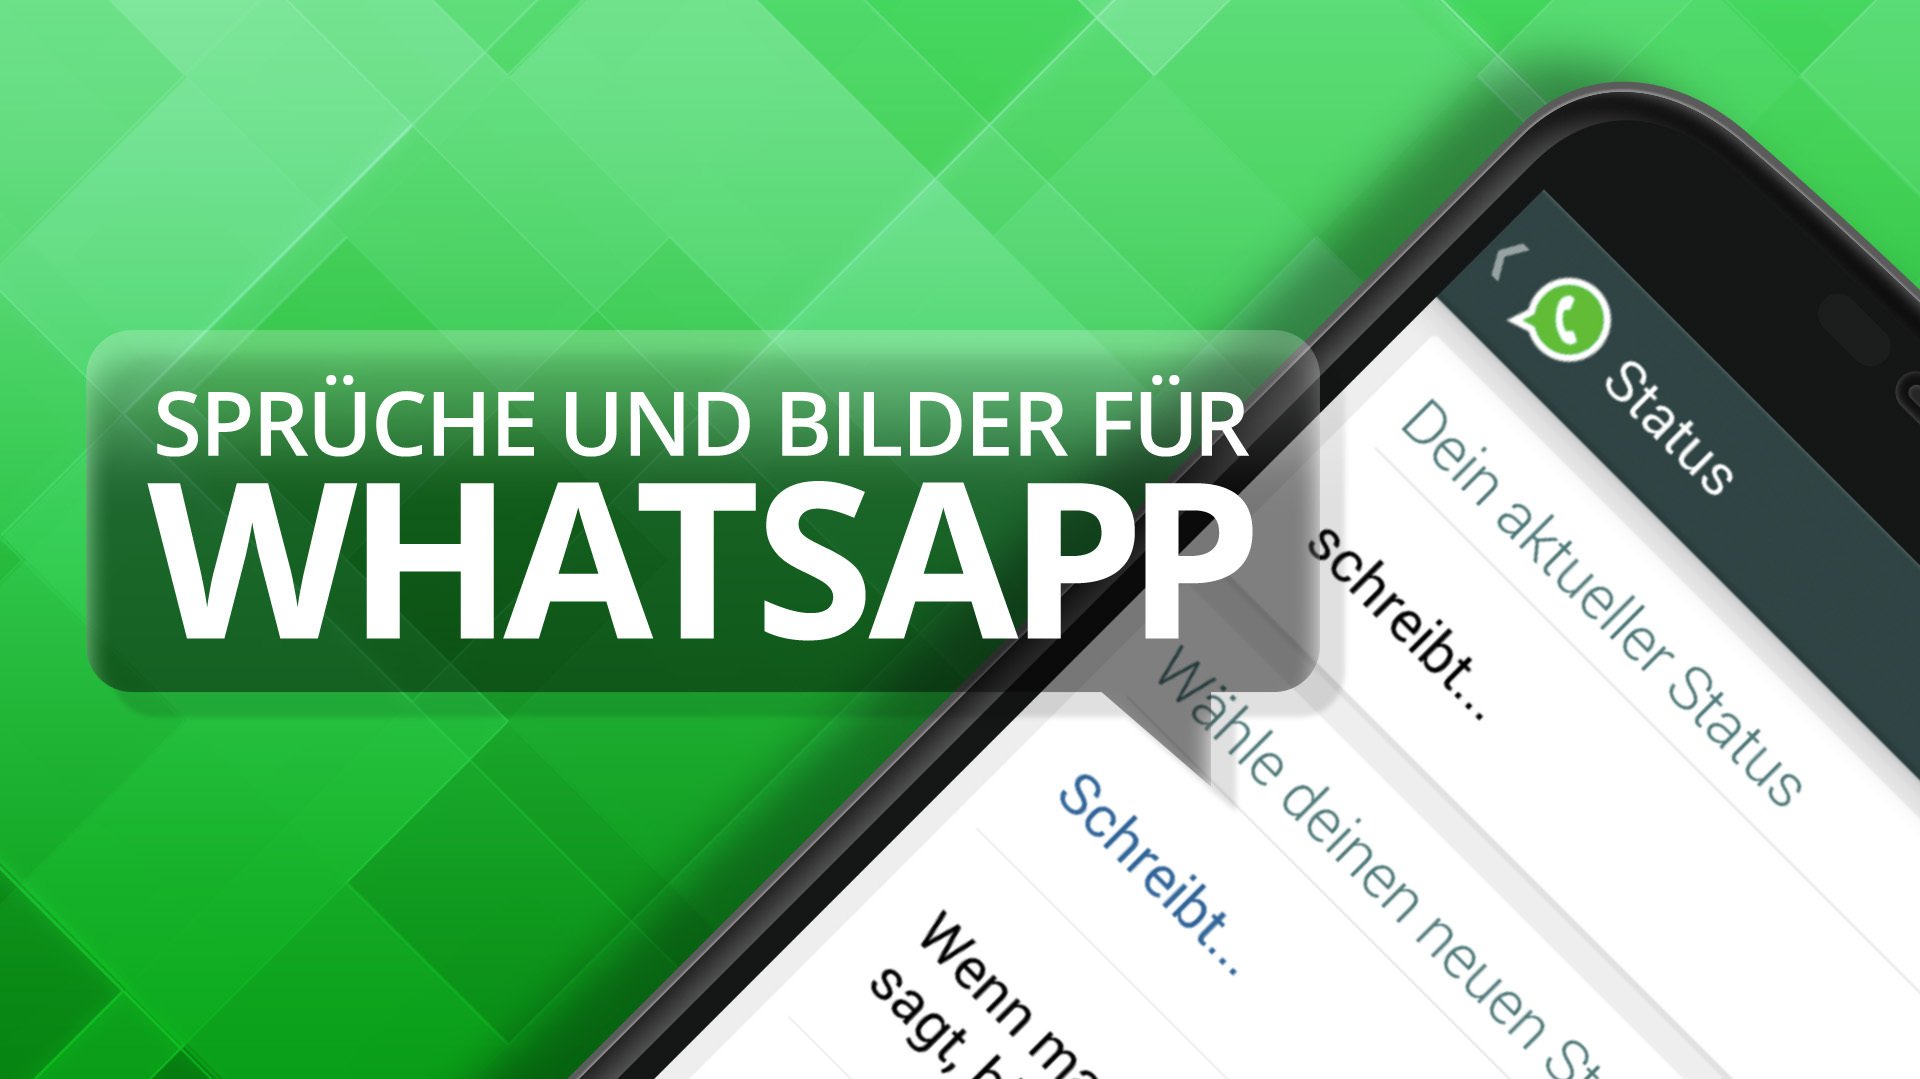 Lustige Bilder und Sprüche für WhatsApp heise Download from heise.cloudimg....